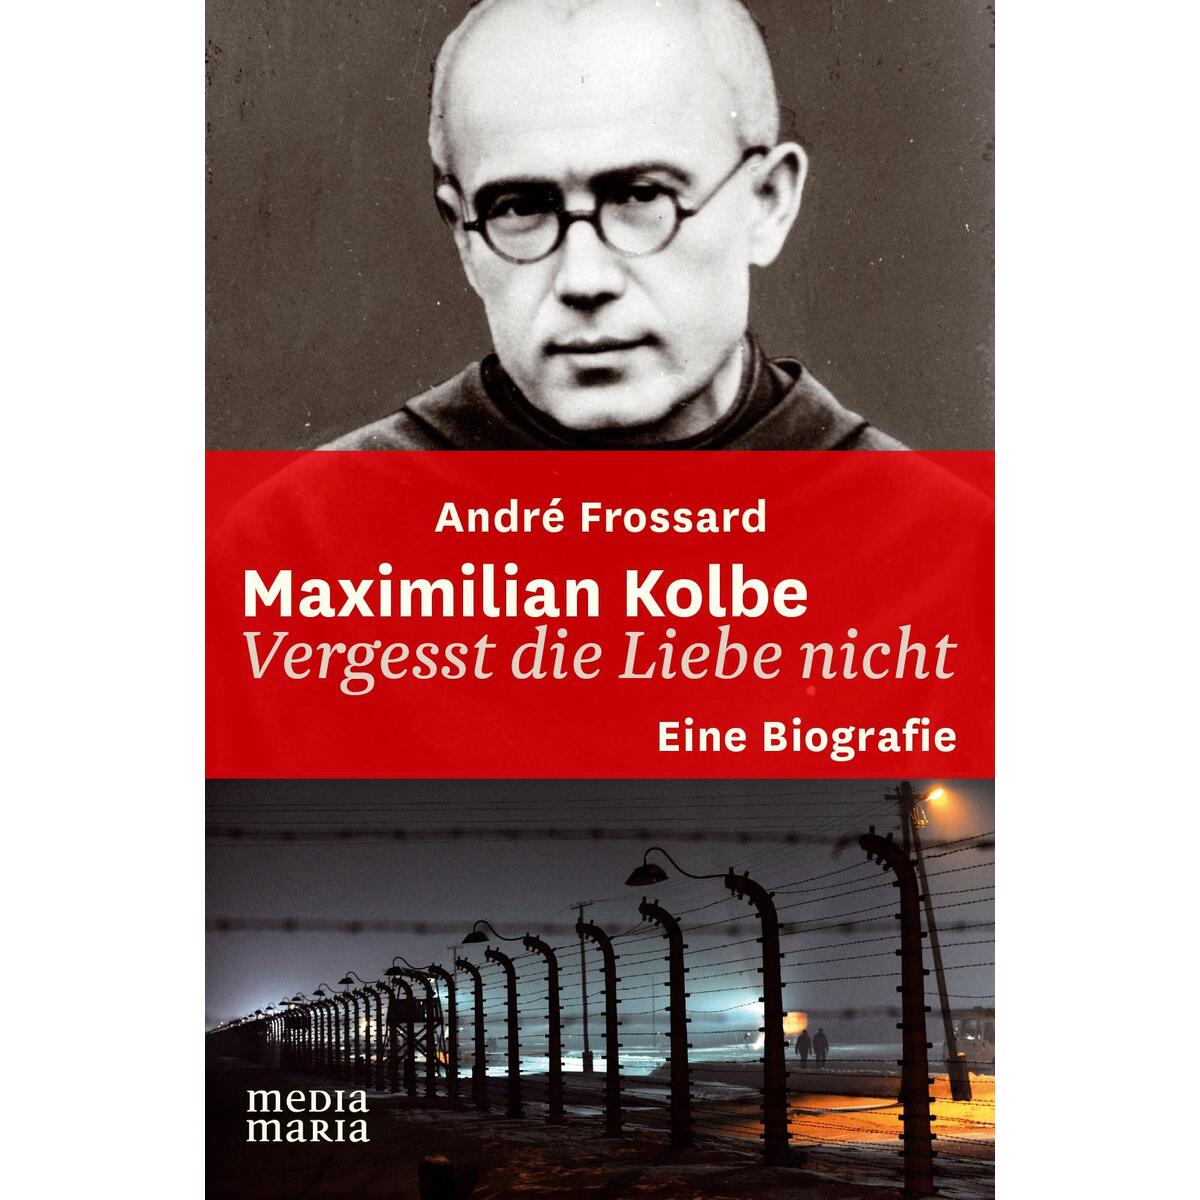 Maximilian Kolbe - Vergesst die Liebe nicht von media maria